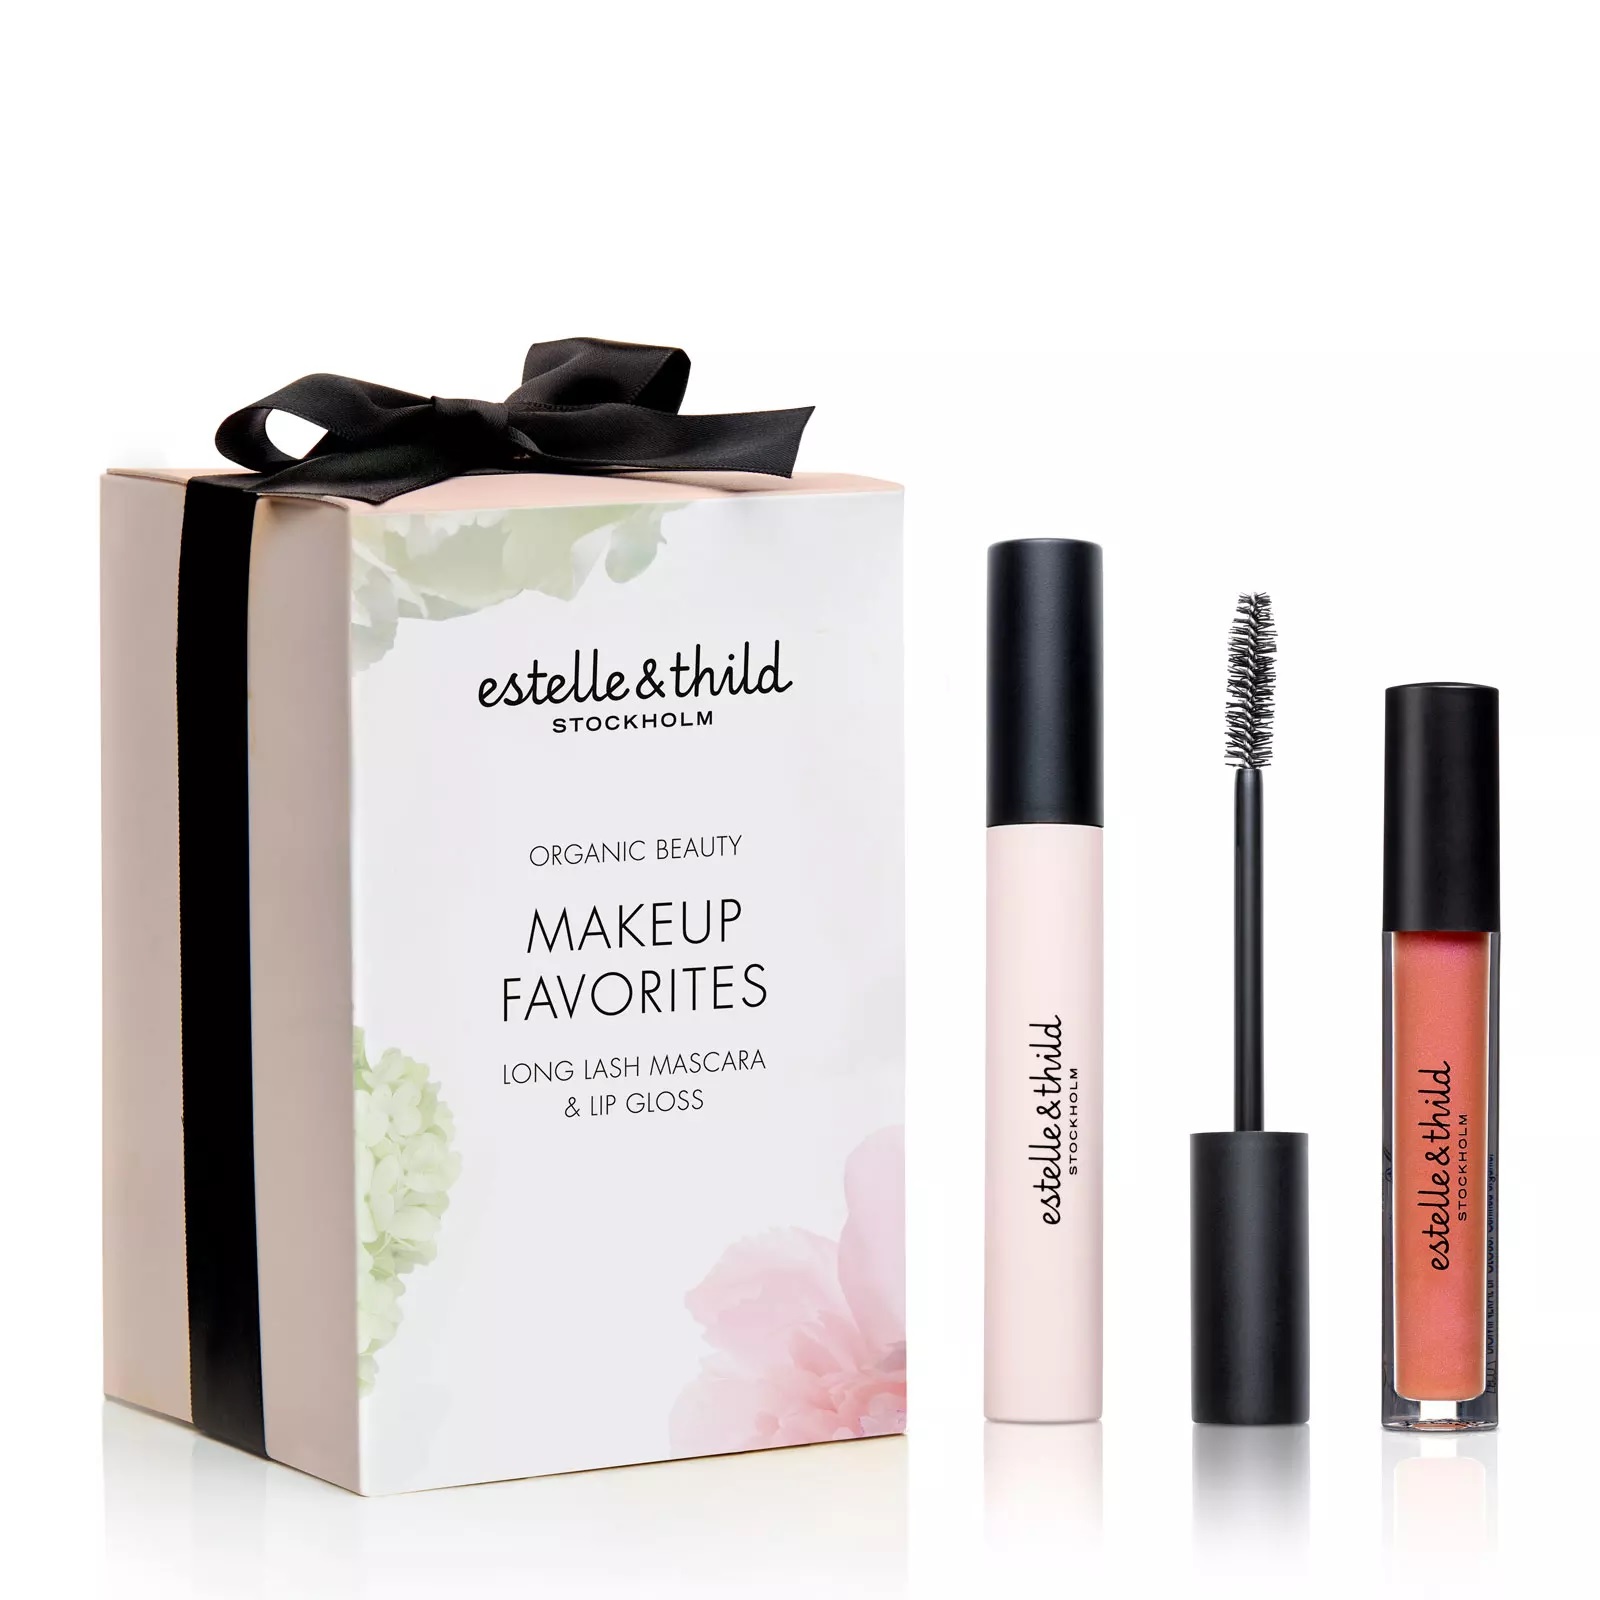 Estelle & Thild Makeup Favorites Gift Set